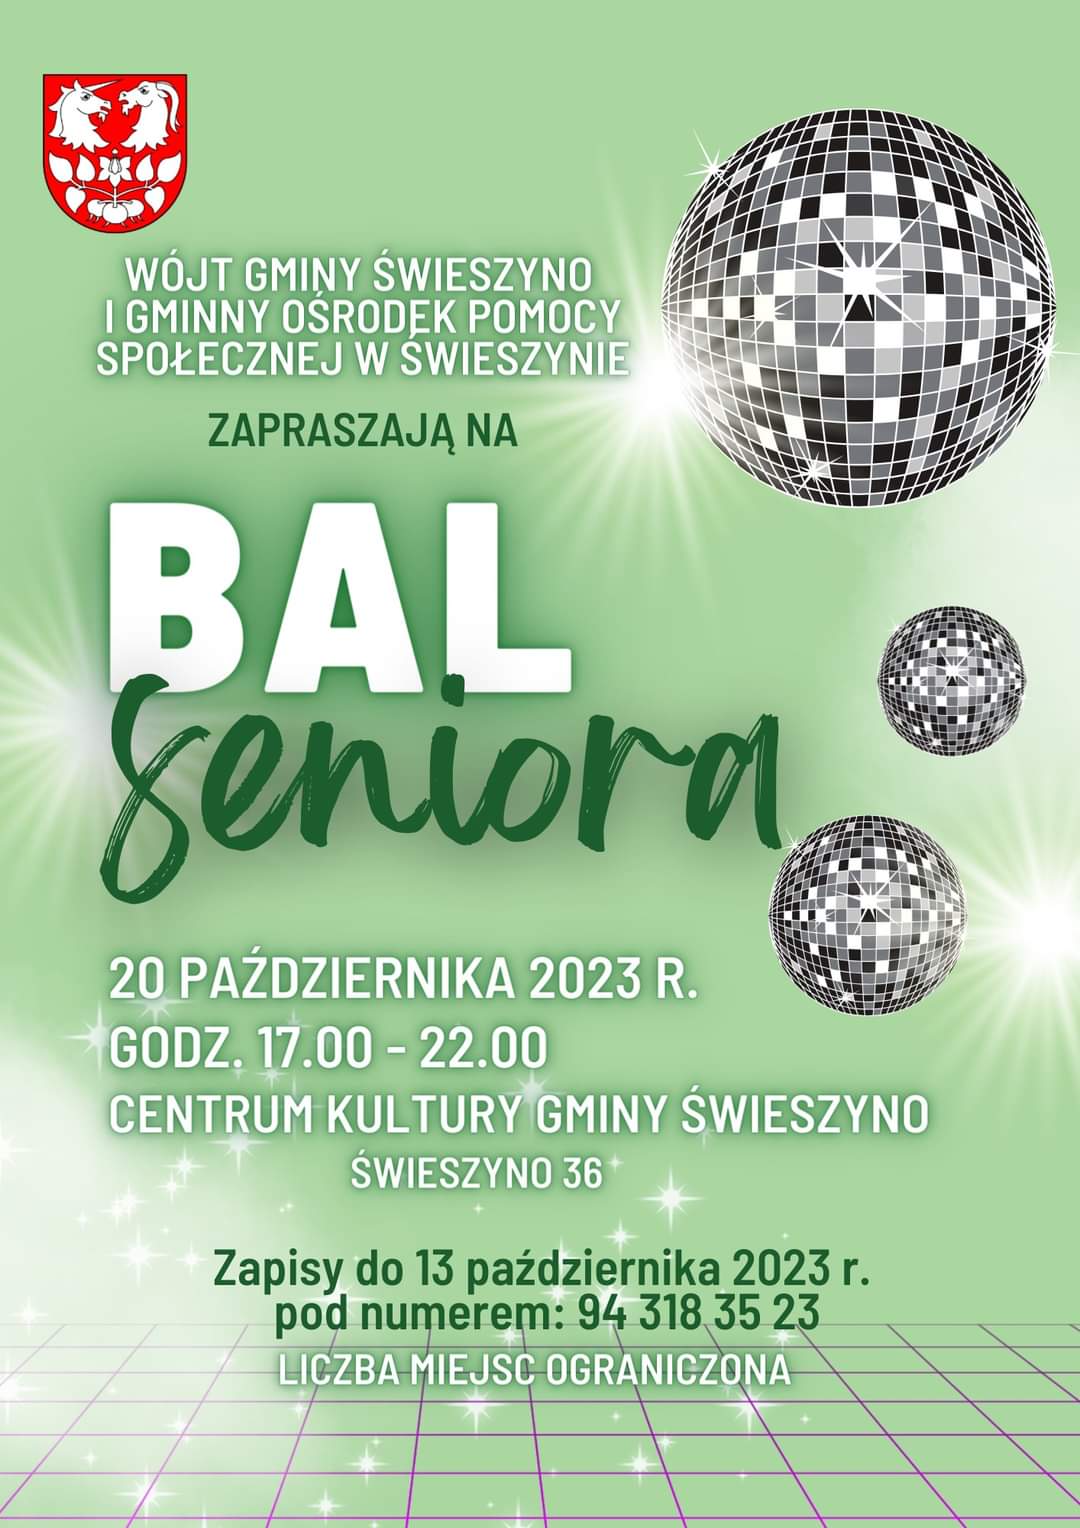 Plakat z zaproszeniem na bal seniora w Świeszynie 20 października 2023